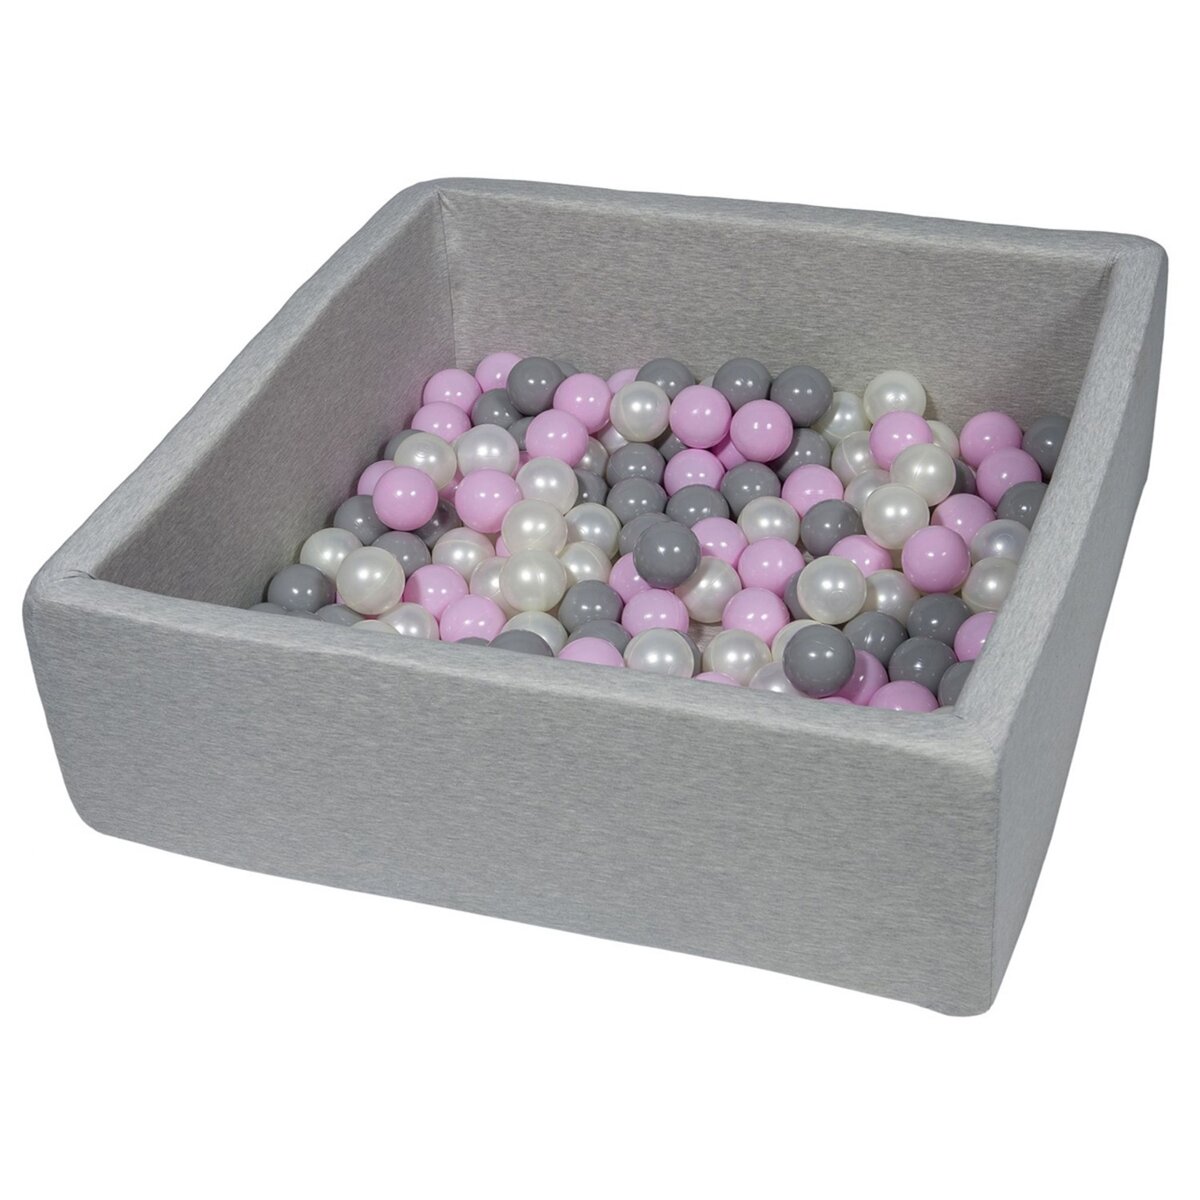  Piscine à balles pour enfant,  90x90 cm, Aire de jeu + 150 balles perle, rose clair, gris